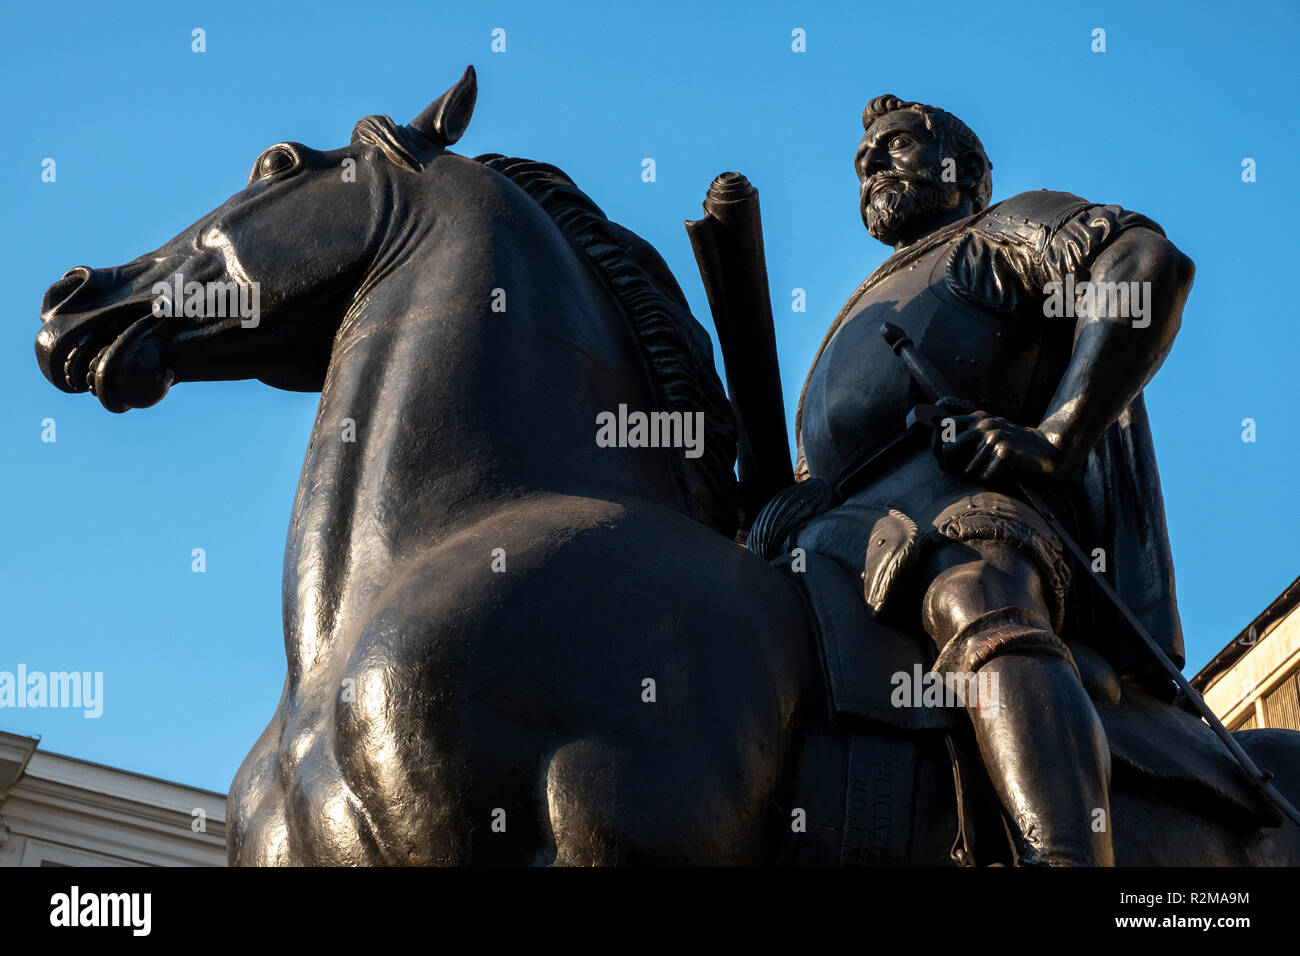 The Pedro de Valdivia Statue in the Plaza de Armas, the main square of Santiago, Chile Stock Photo